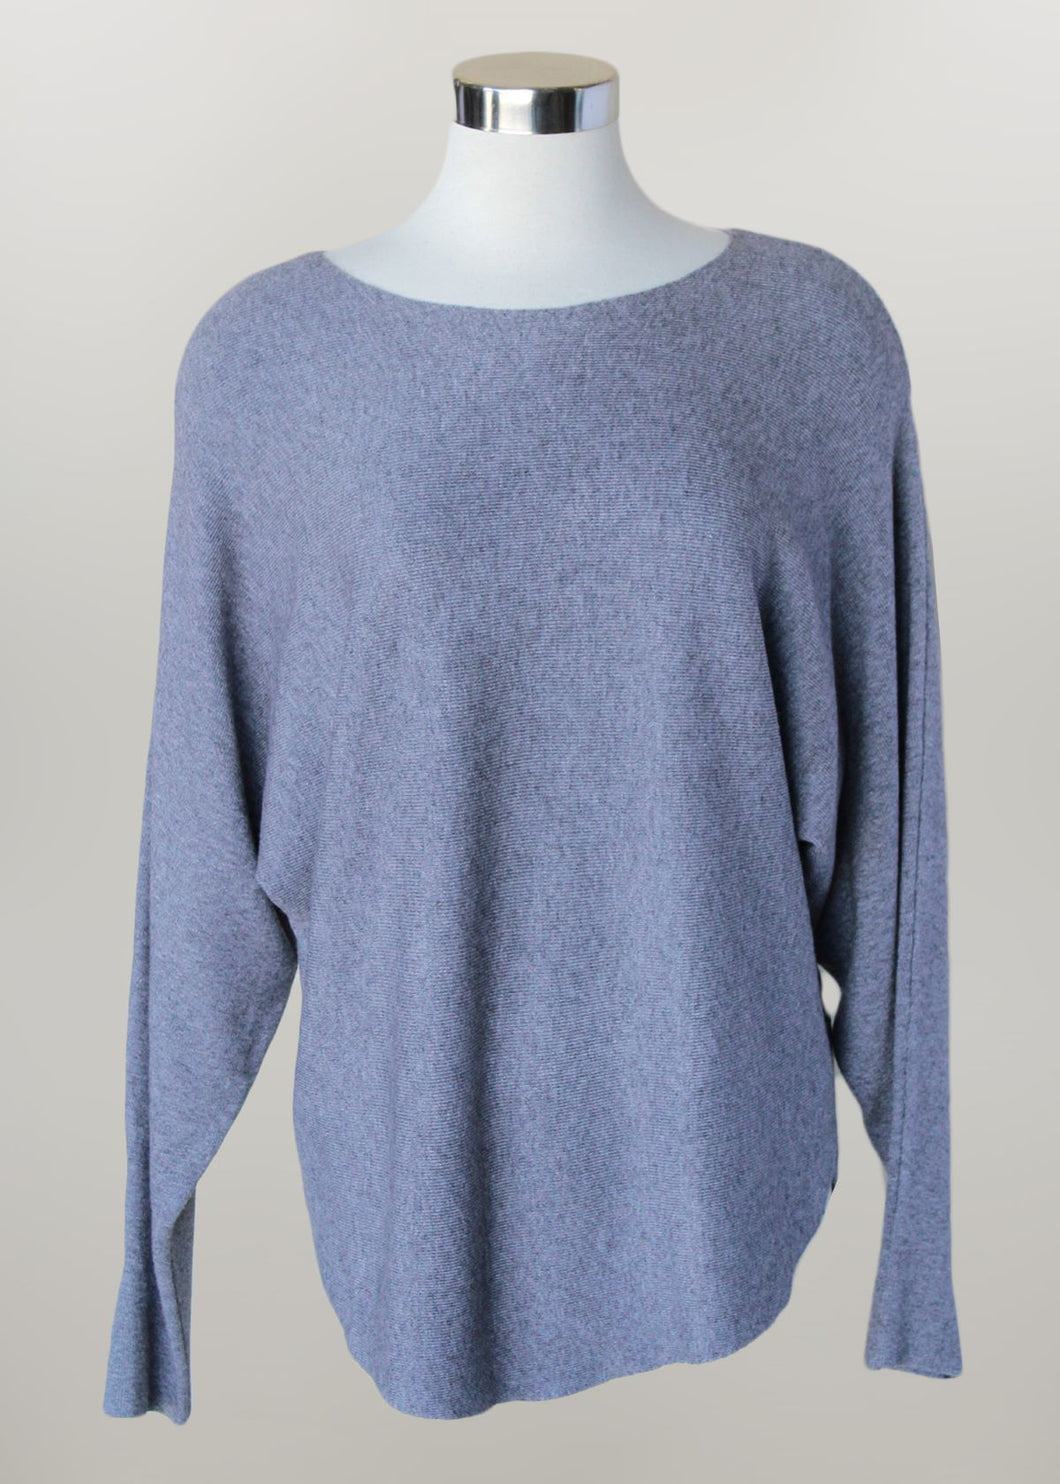 'Keren Hart' Women's Pullover Sweater - Heather Grey